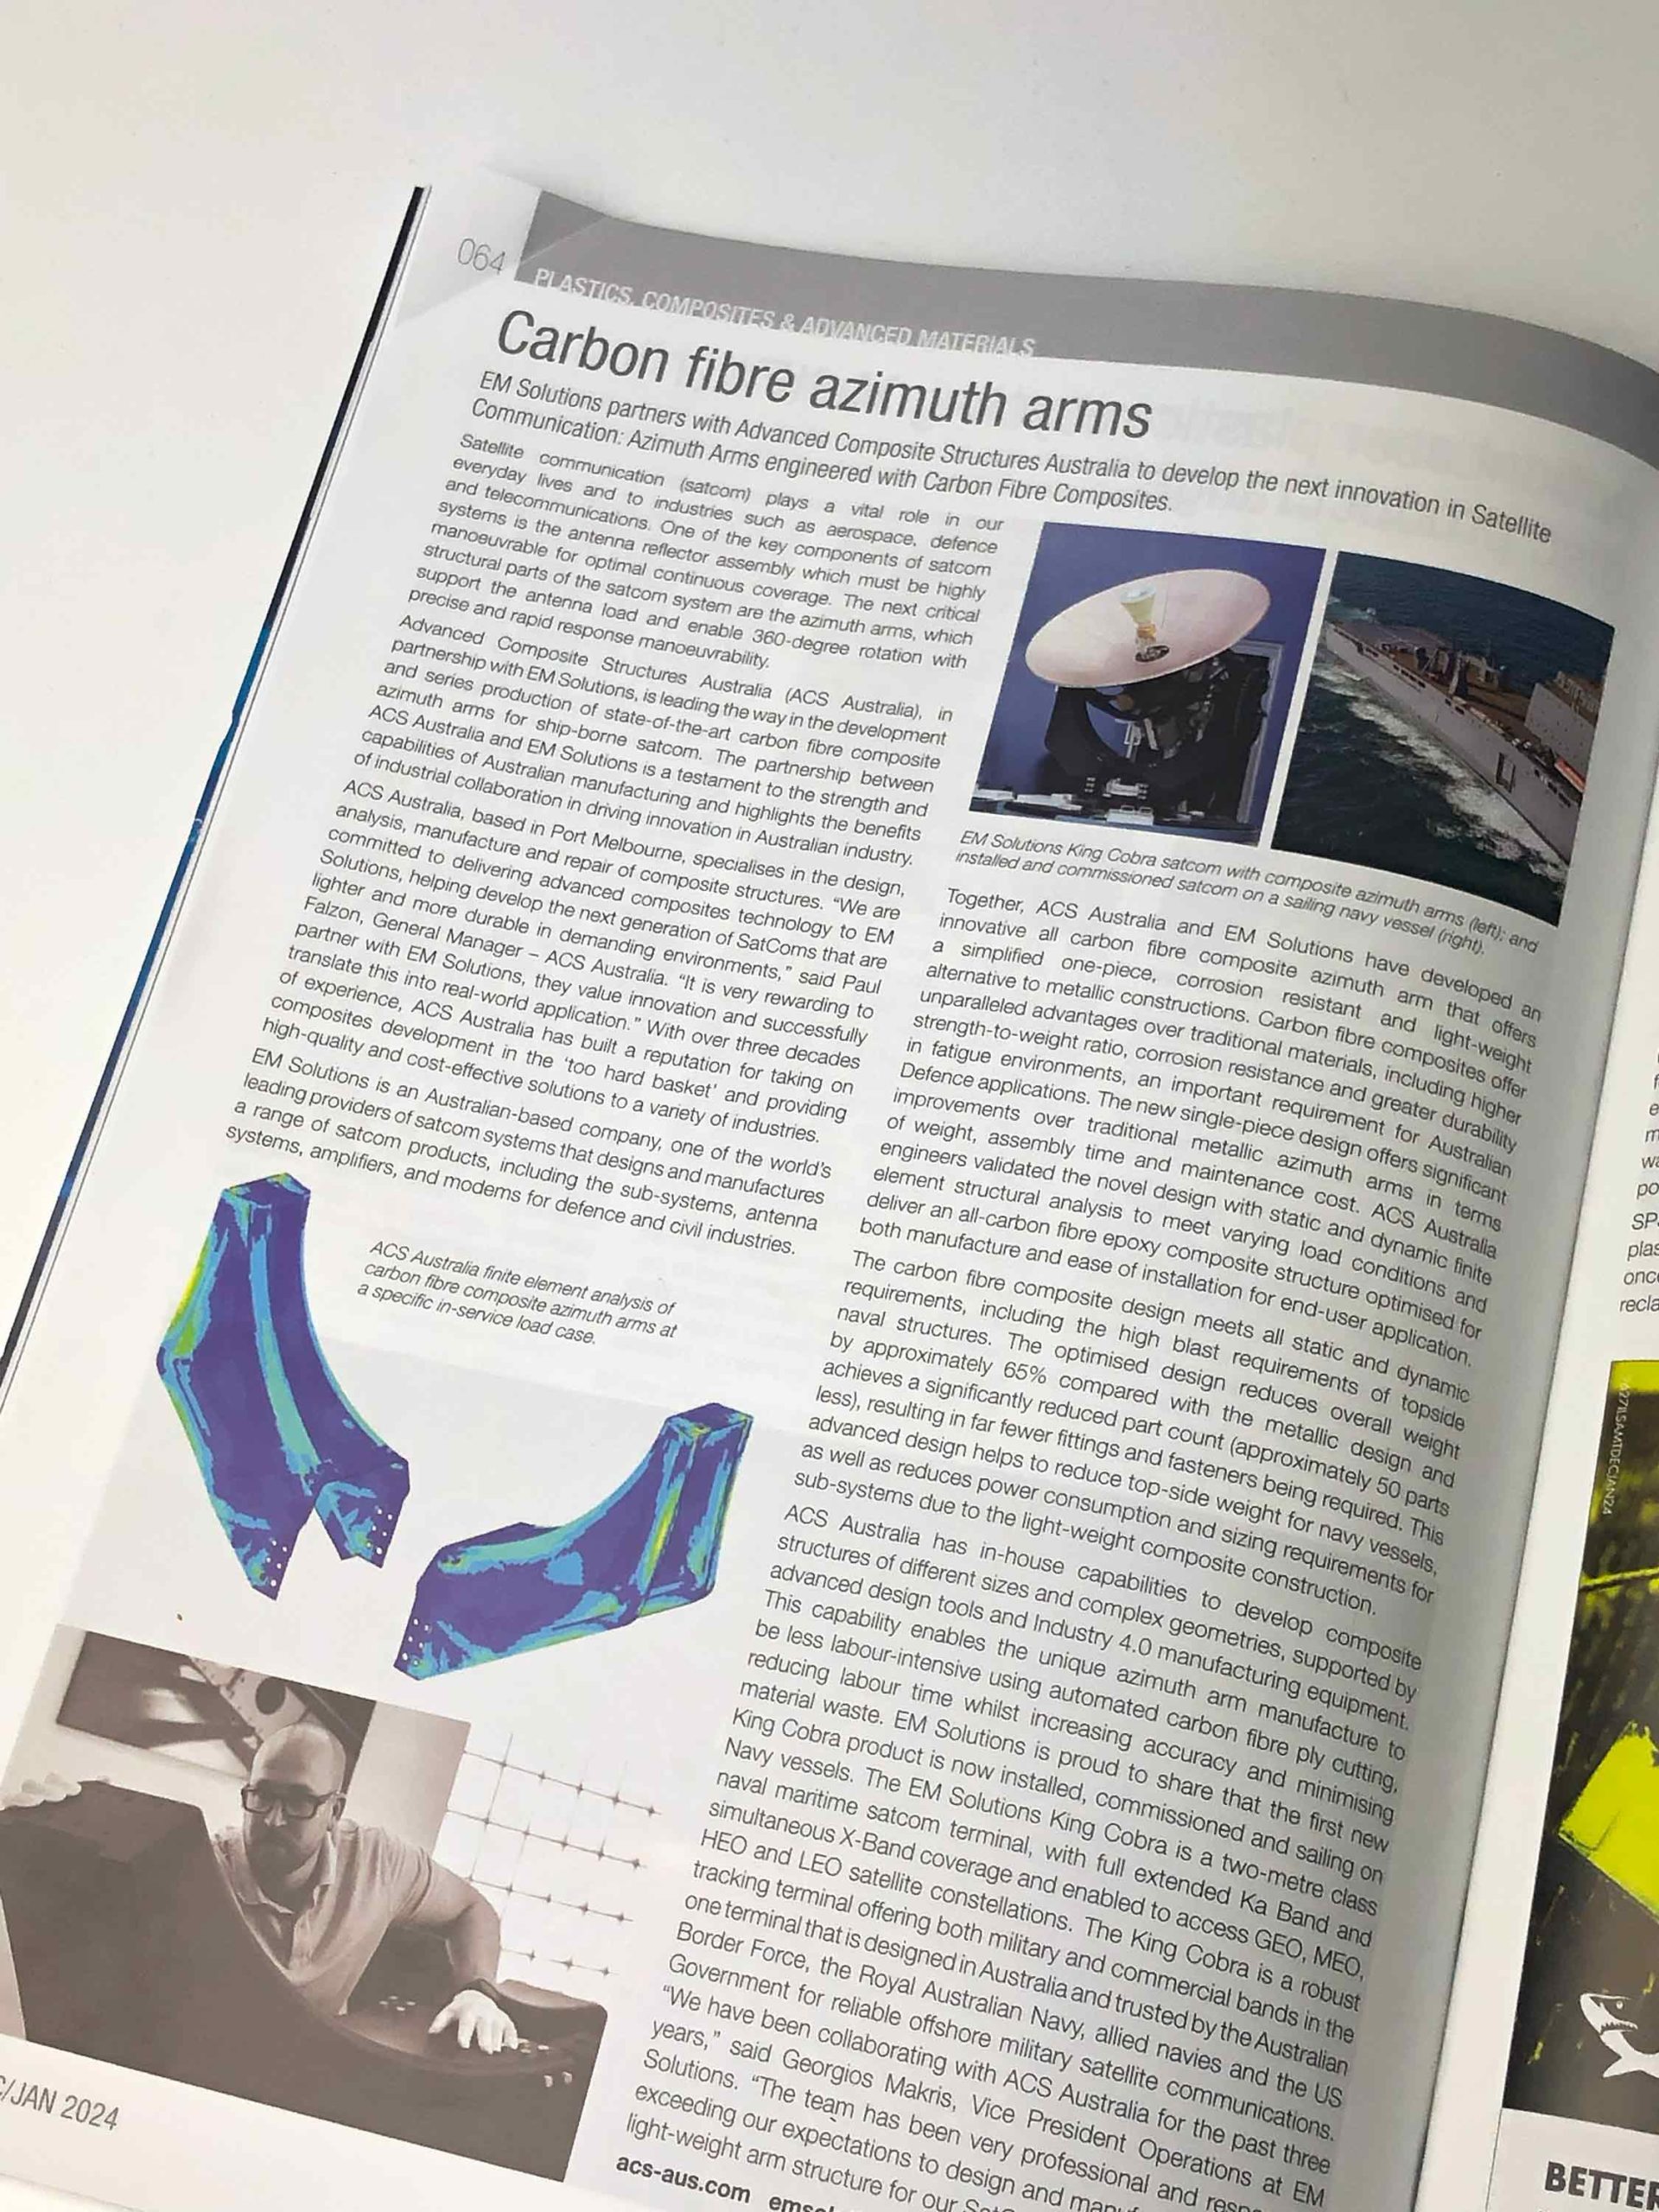 AMTIL Magazine Dec/Jan 2024 p.64 featuring the SatCom Carbon Fibre Azimuth Arms